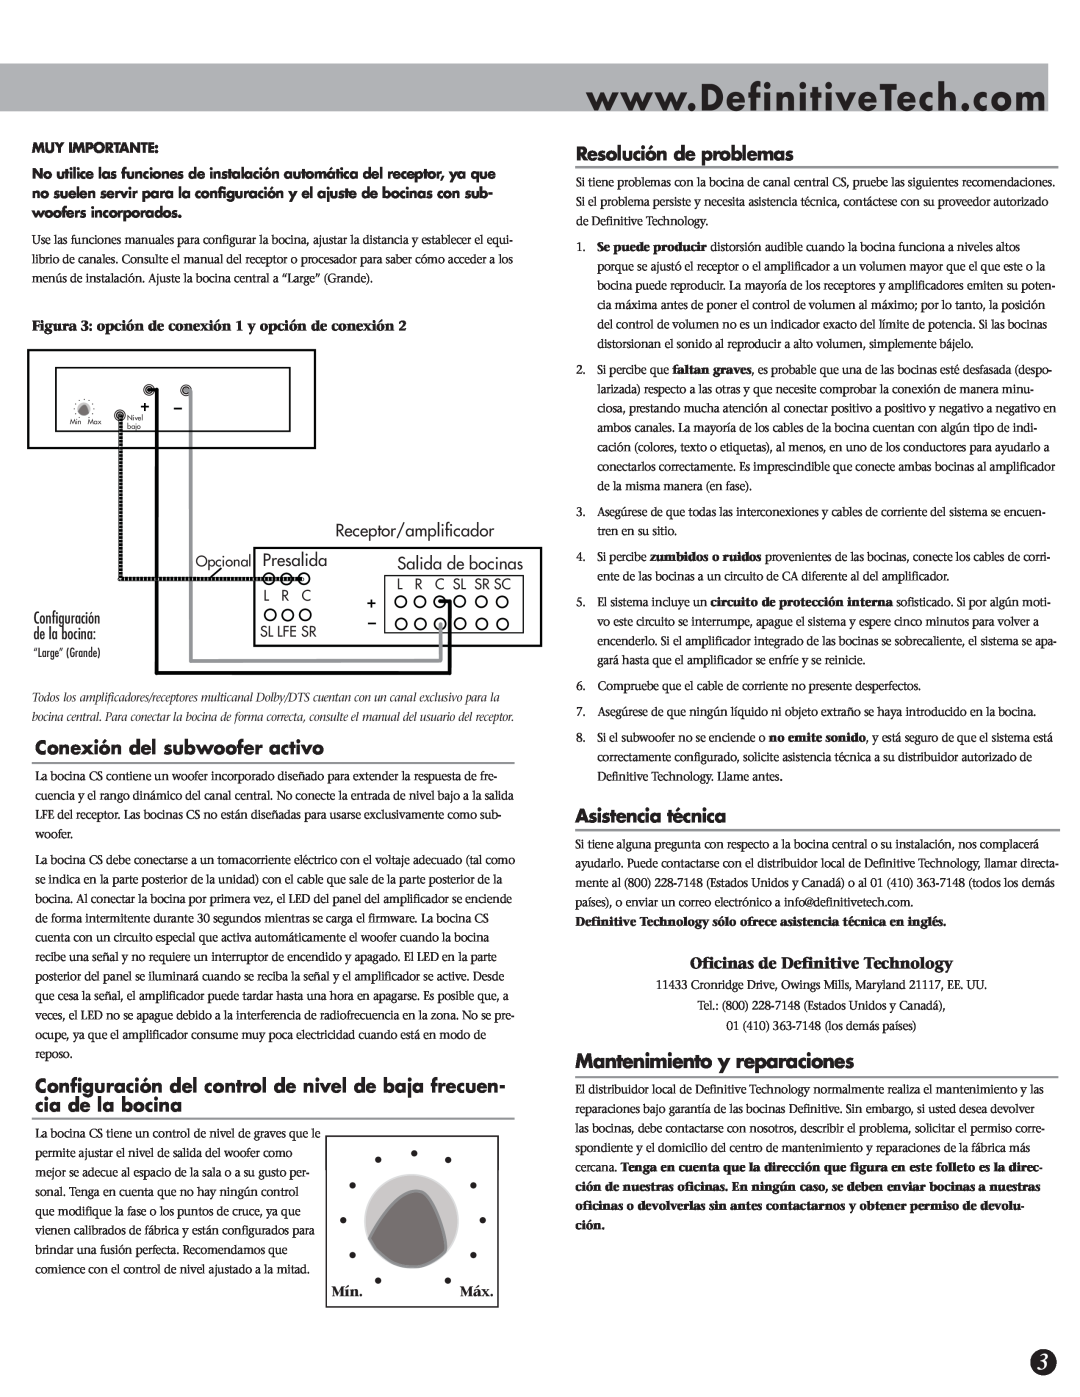 Definitive Technology CS-8080HD Mantenimiento y reparaciones, Conexión del subwoofer activo, Resolución de problemas 